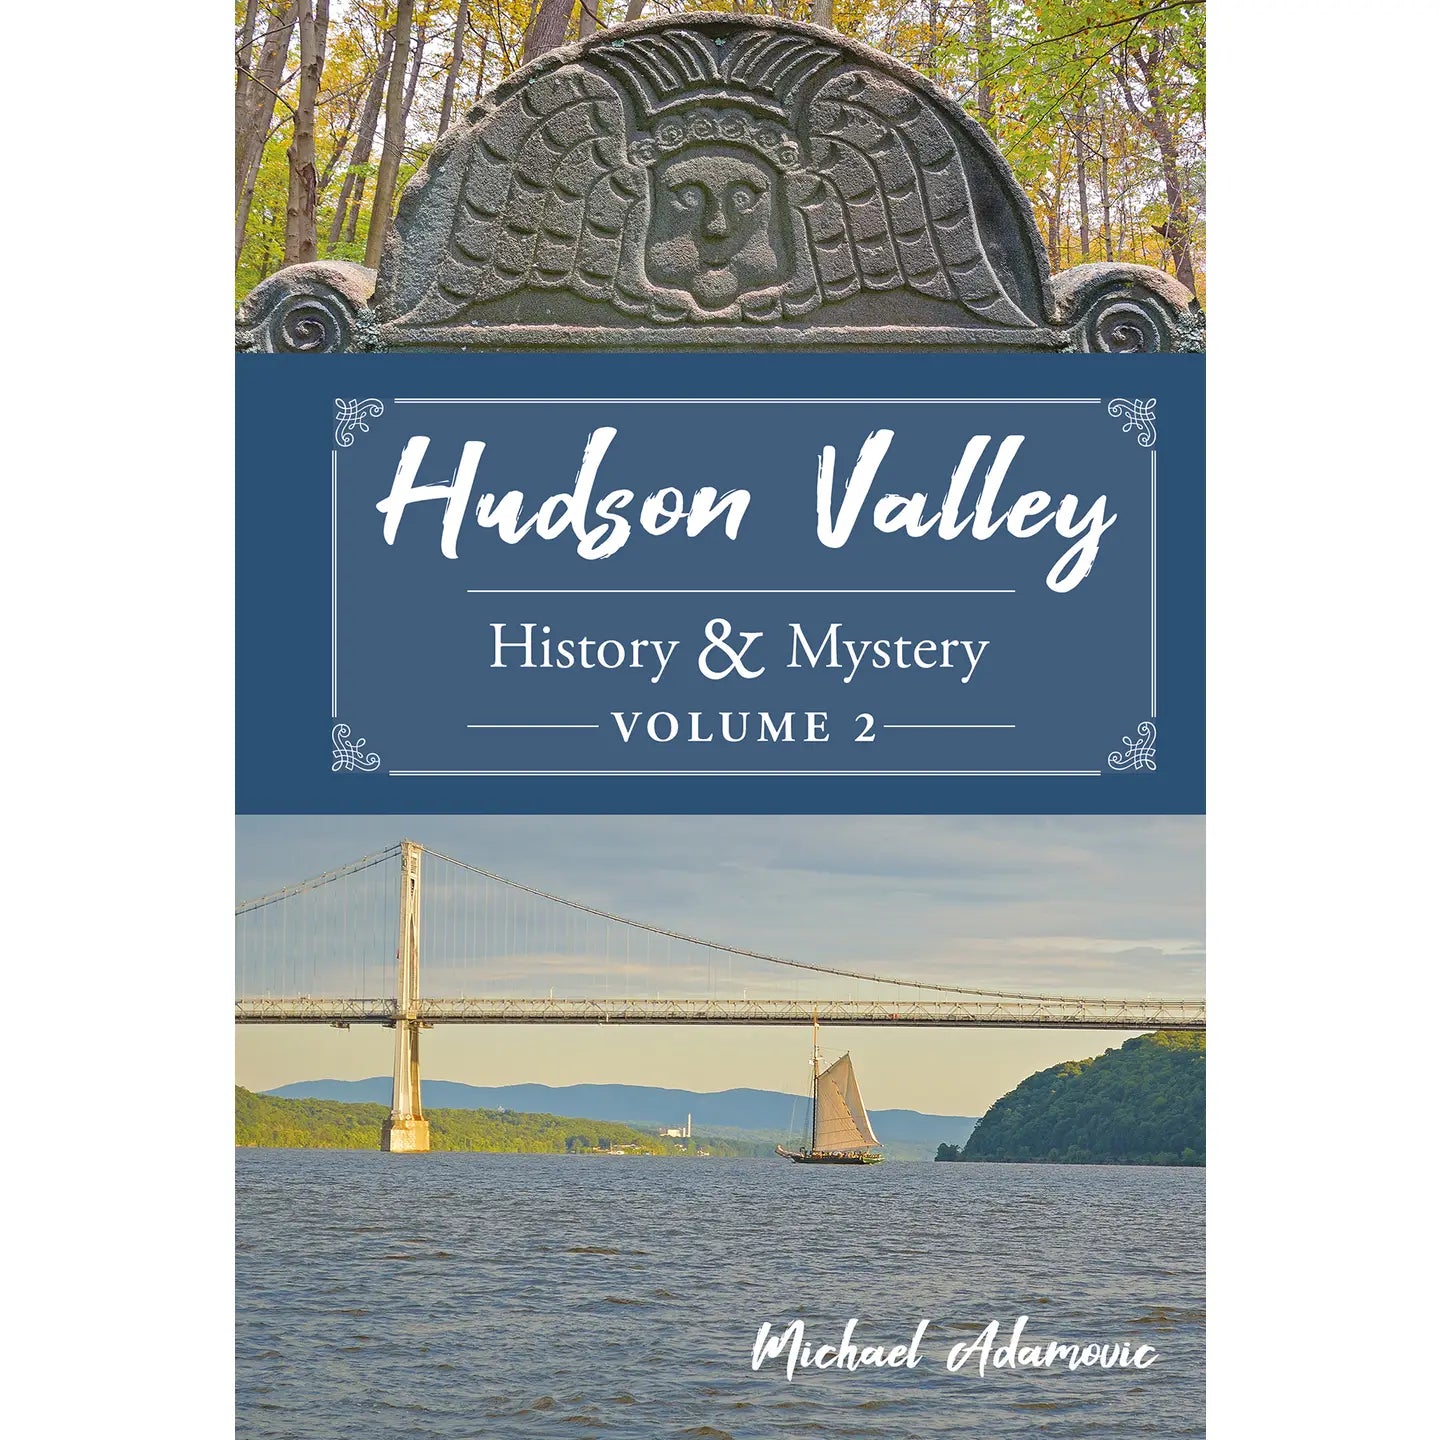 Hudson Valley History & Mystery, Volume 2